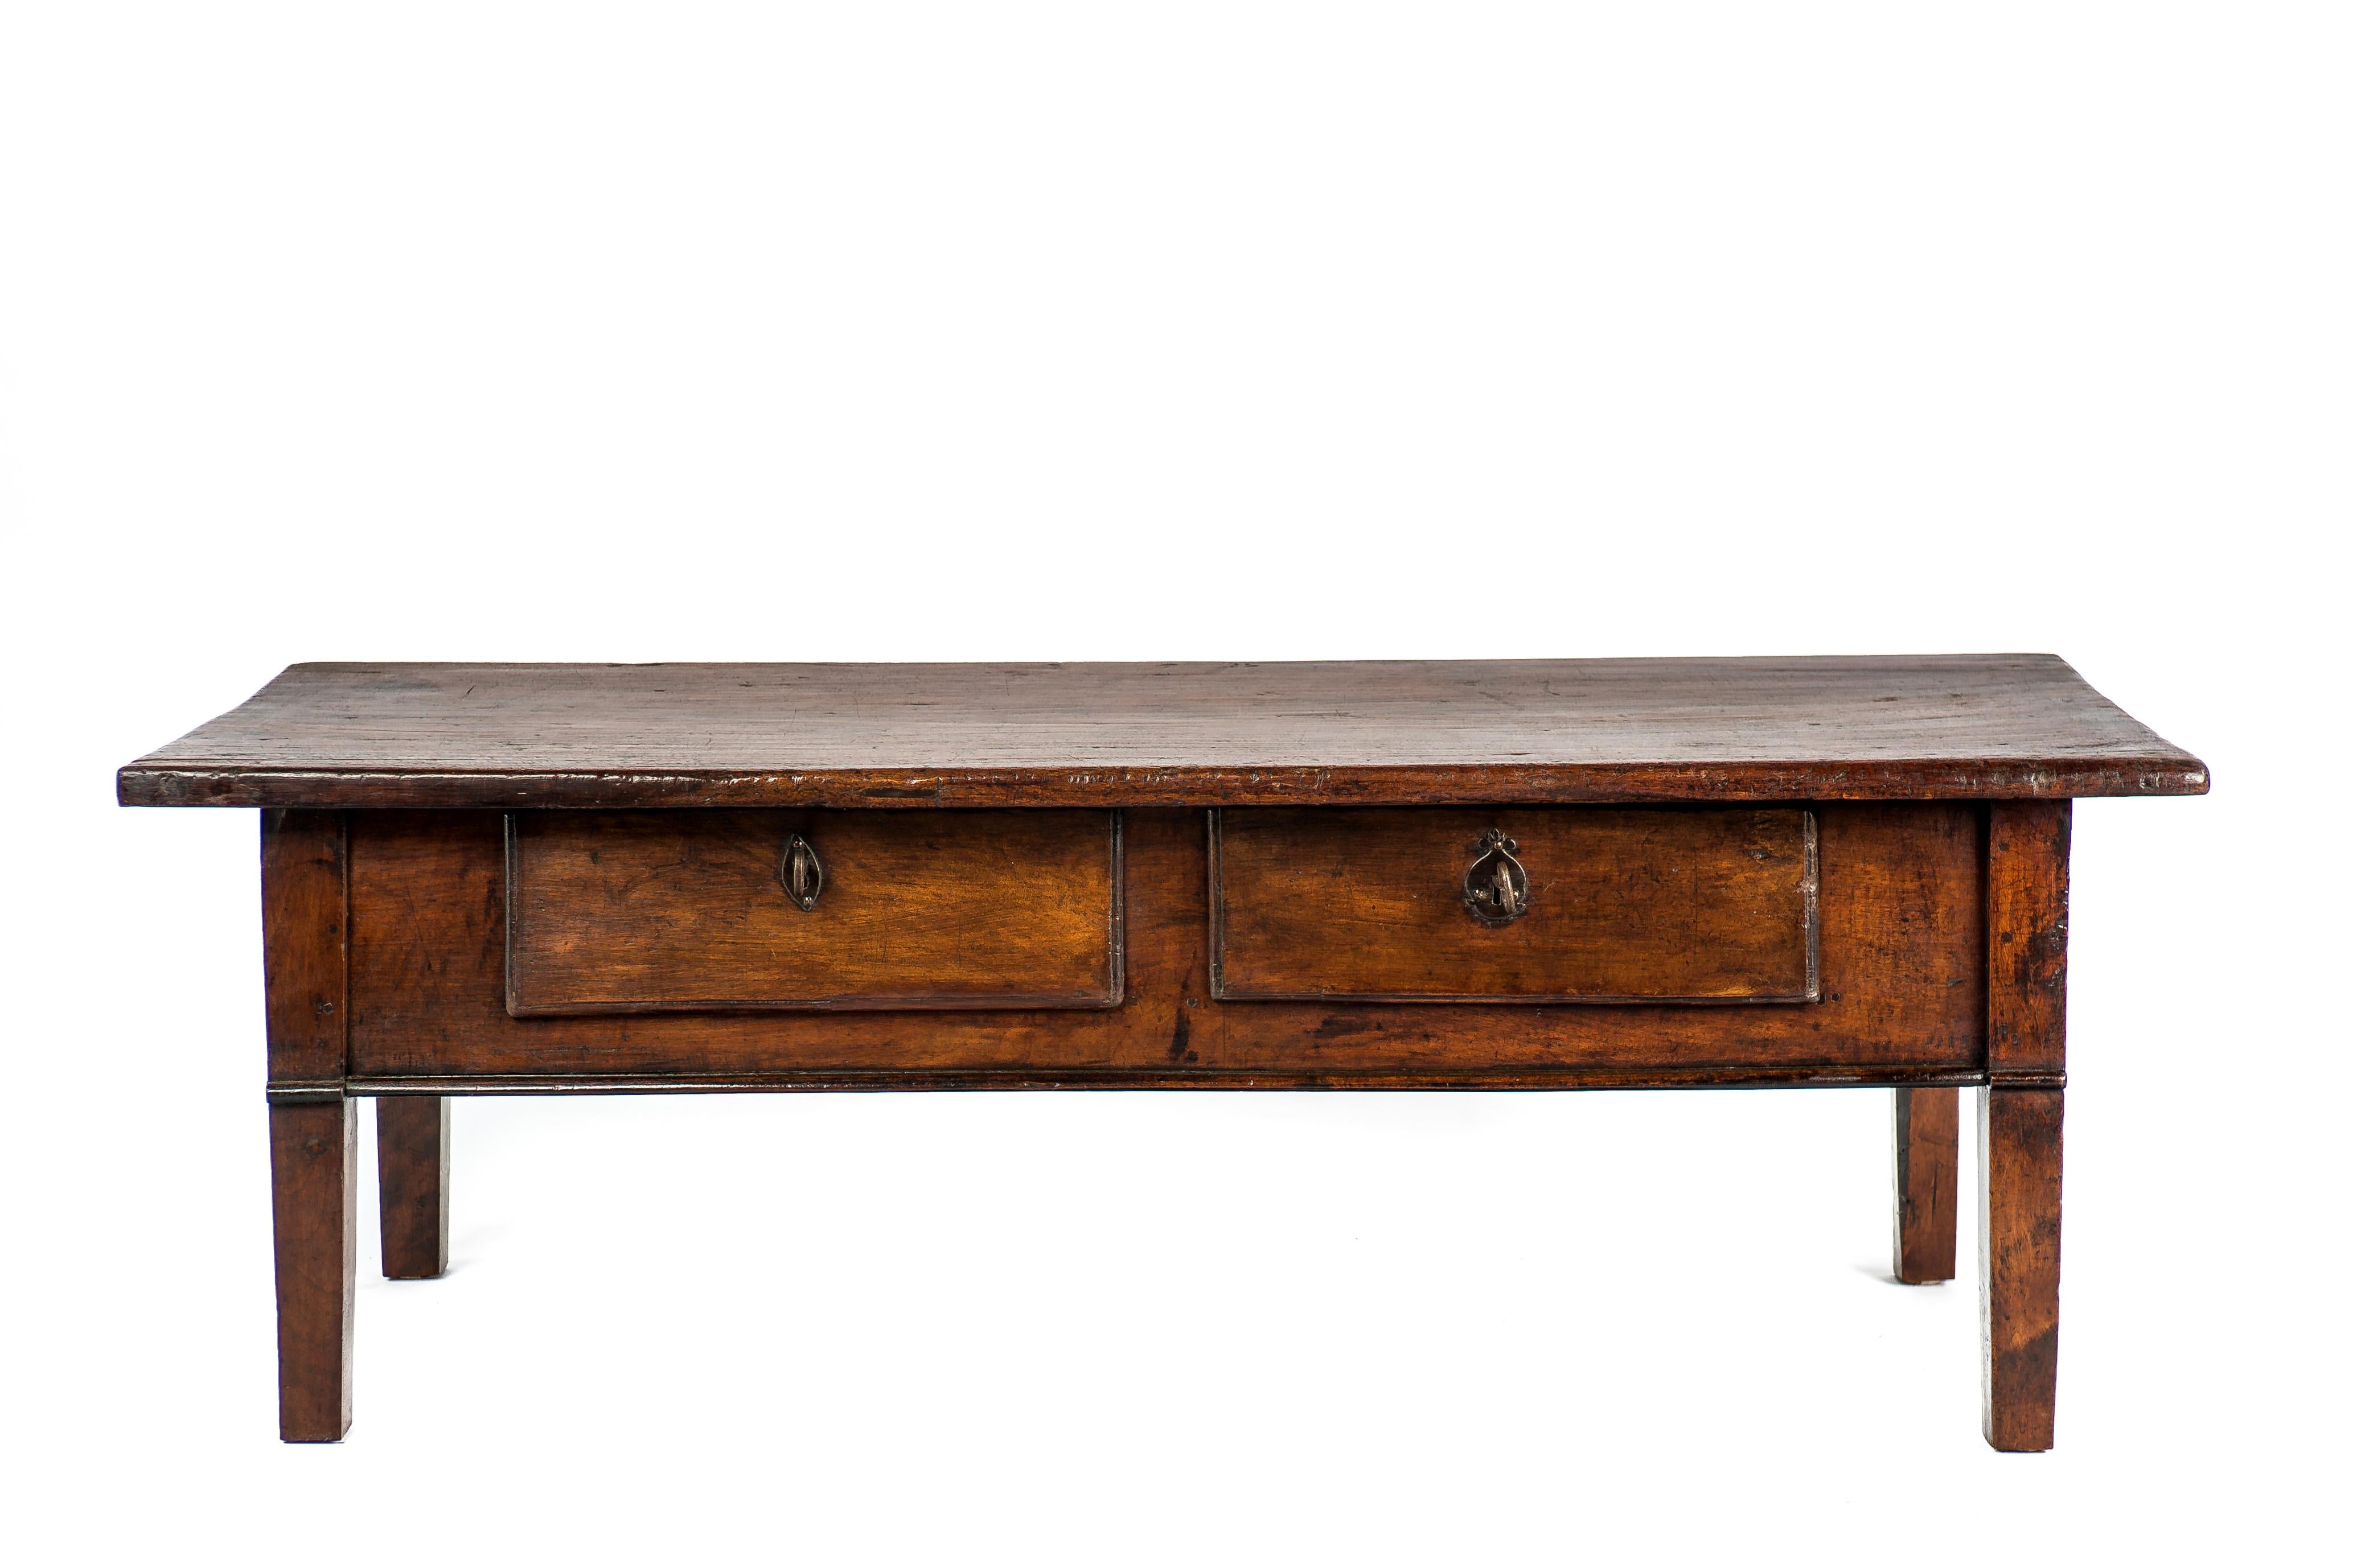 Cette magnifique table basse rustique de couleur brun foncé provient de l'Espagne rurale et date d'environ 1760. Le plateau de la table est fait d'une seule planche de bois de châtaignier massif de 1,26 pouces d'épaisseur. Le plateau présente un